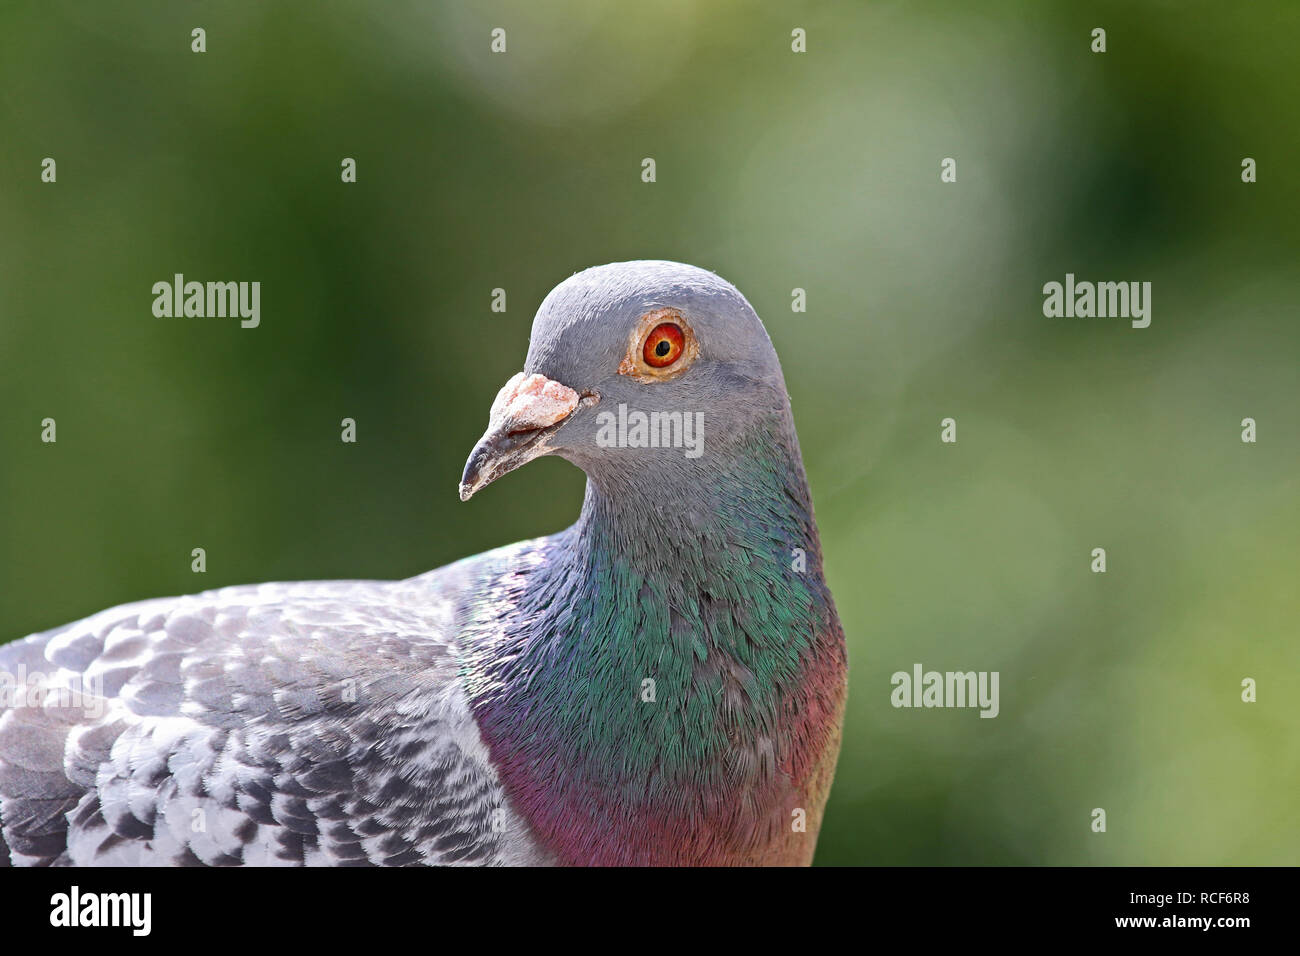 Homing pigeon, piccione viaggiatore o piccioni domestici latino Columba livia domestica closeup prendendo una pausa dal suo lungo volo guardando la telecamera Foto Stock